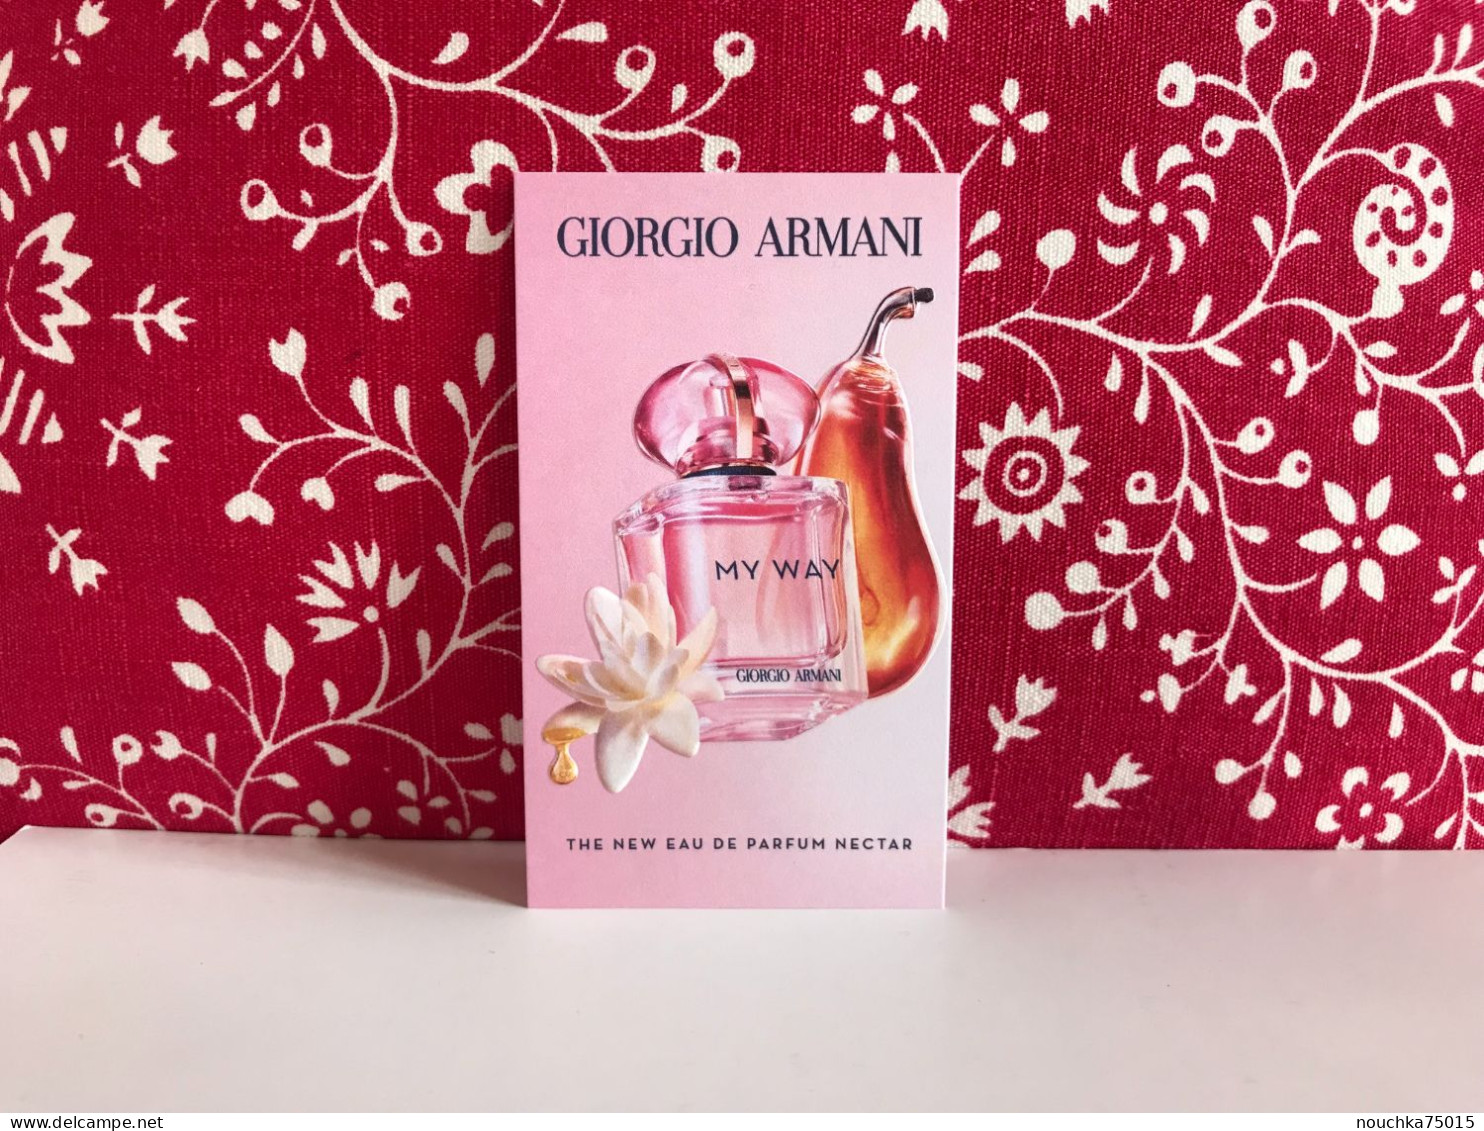 Giorgio Armani - My Way, Eau De Parfum Nectar - Modern (ab 1961)